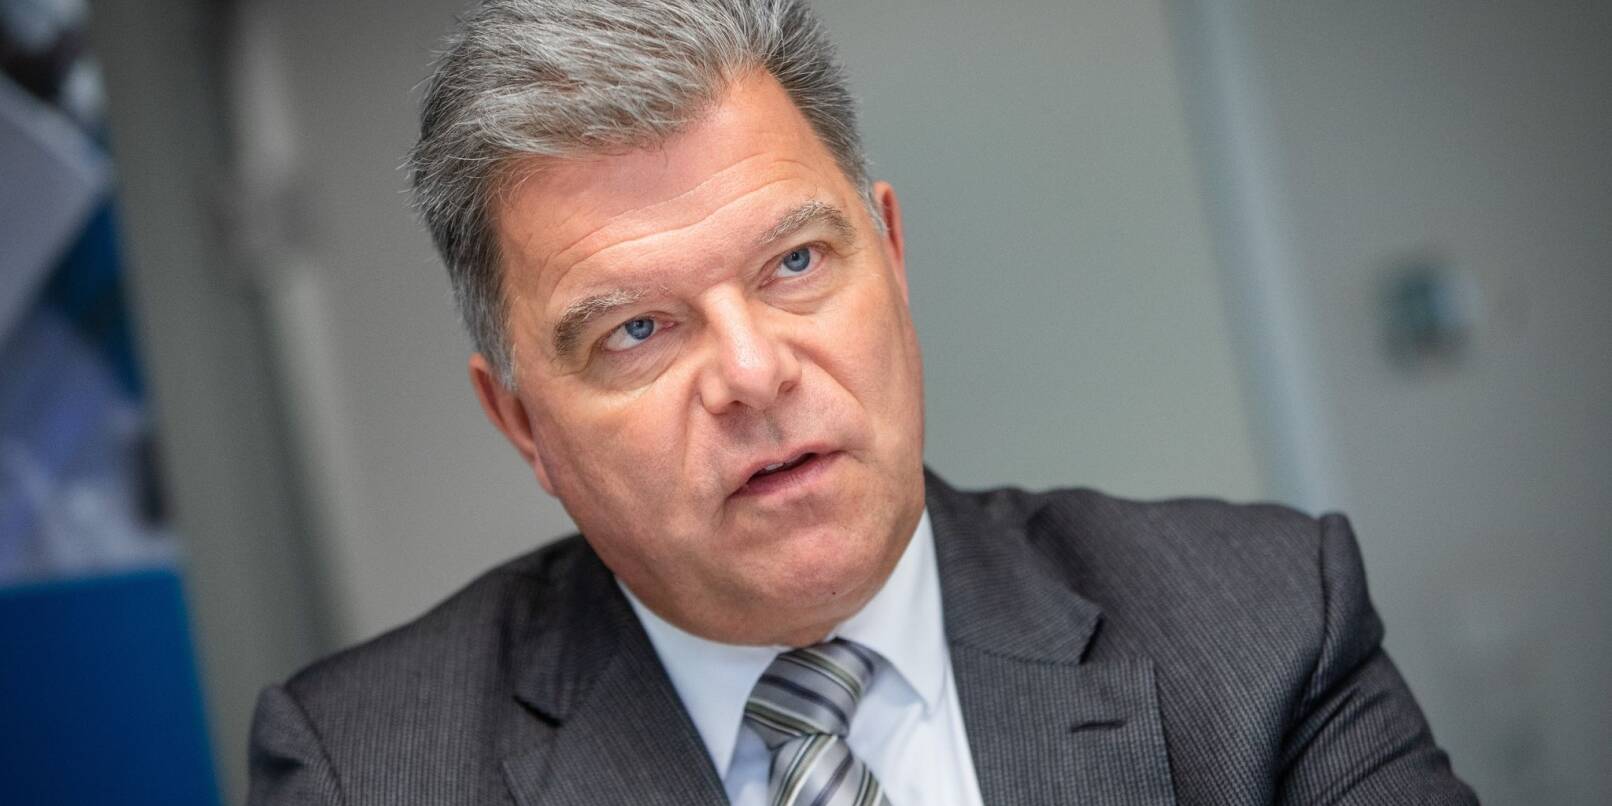 Christian Erbe, Präsident des Baden-Württembergischen Industrie- und Handelskammertages (BWIHK), im Gespräch mit der dpa.